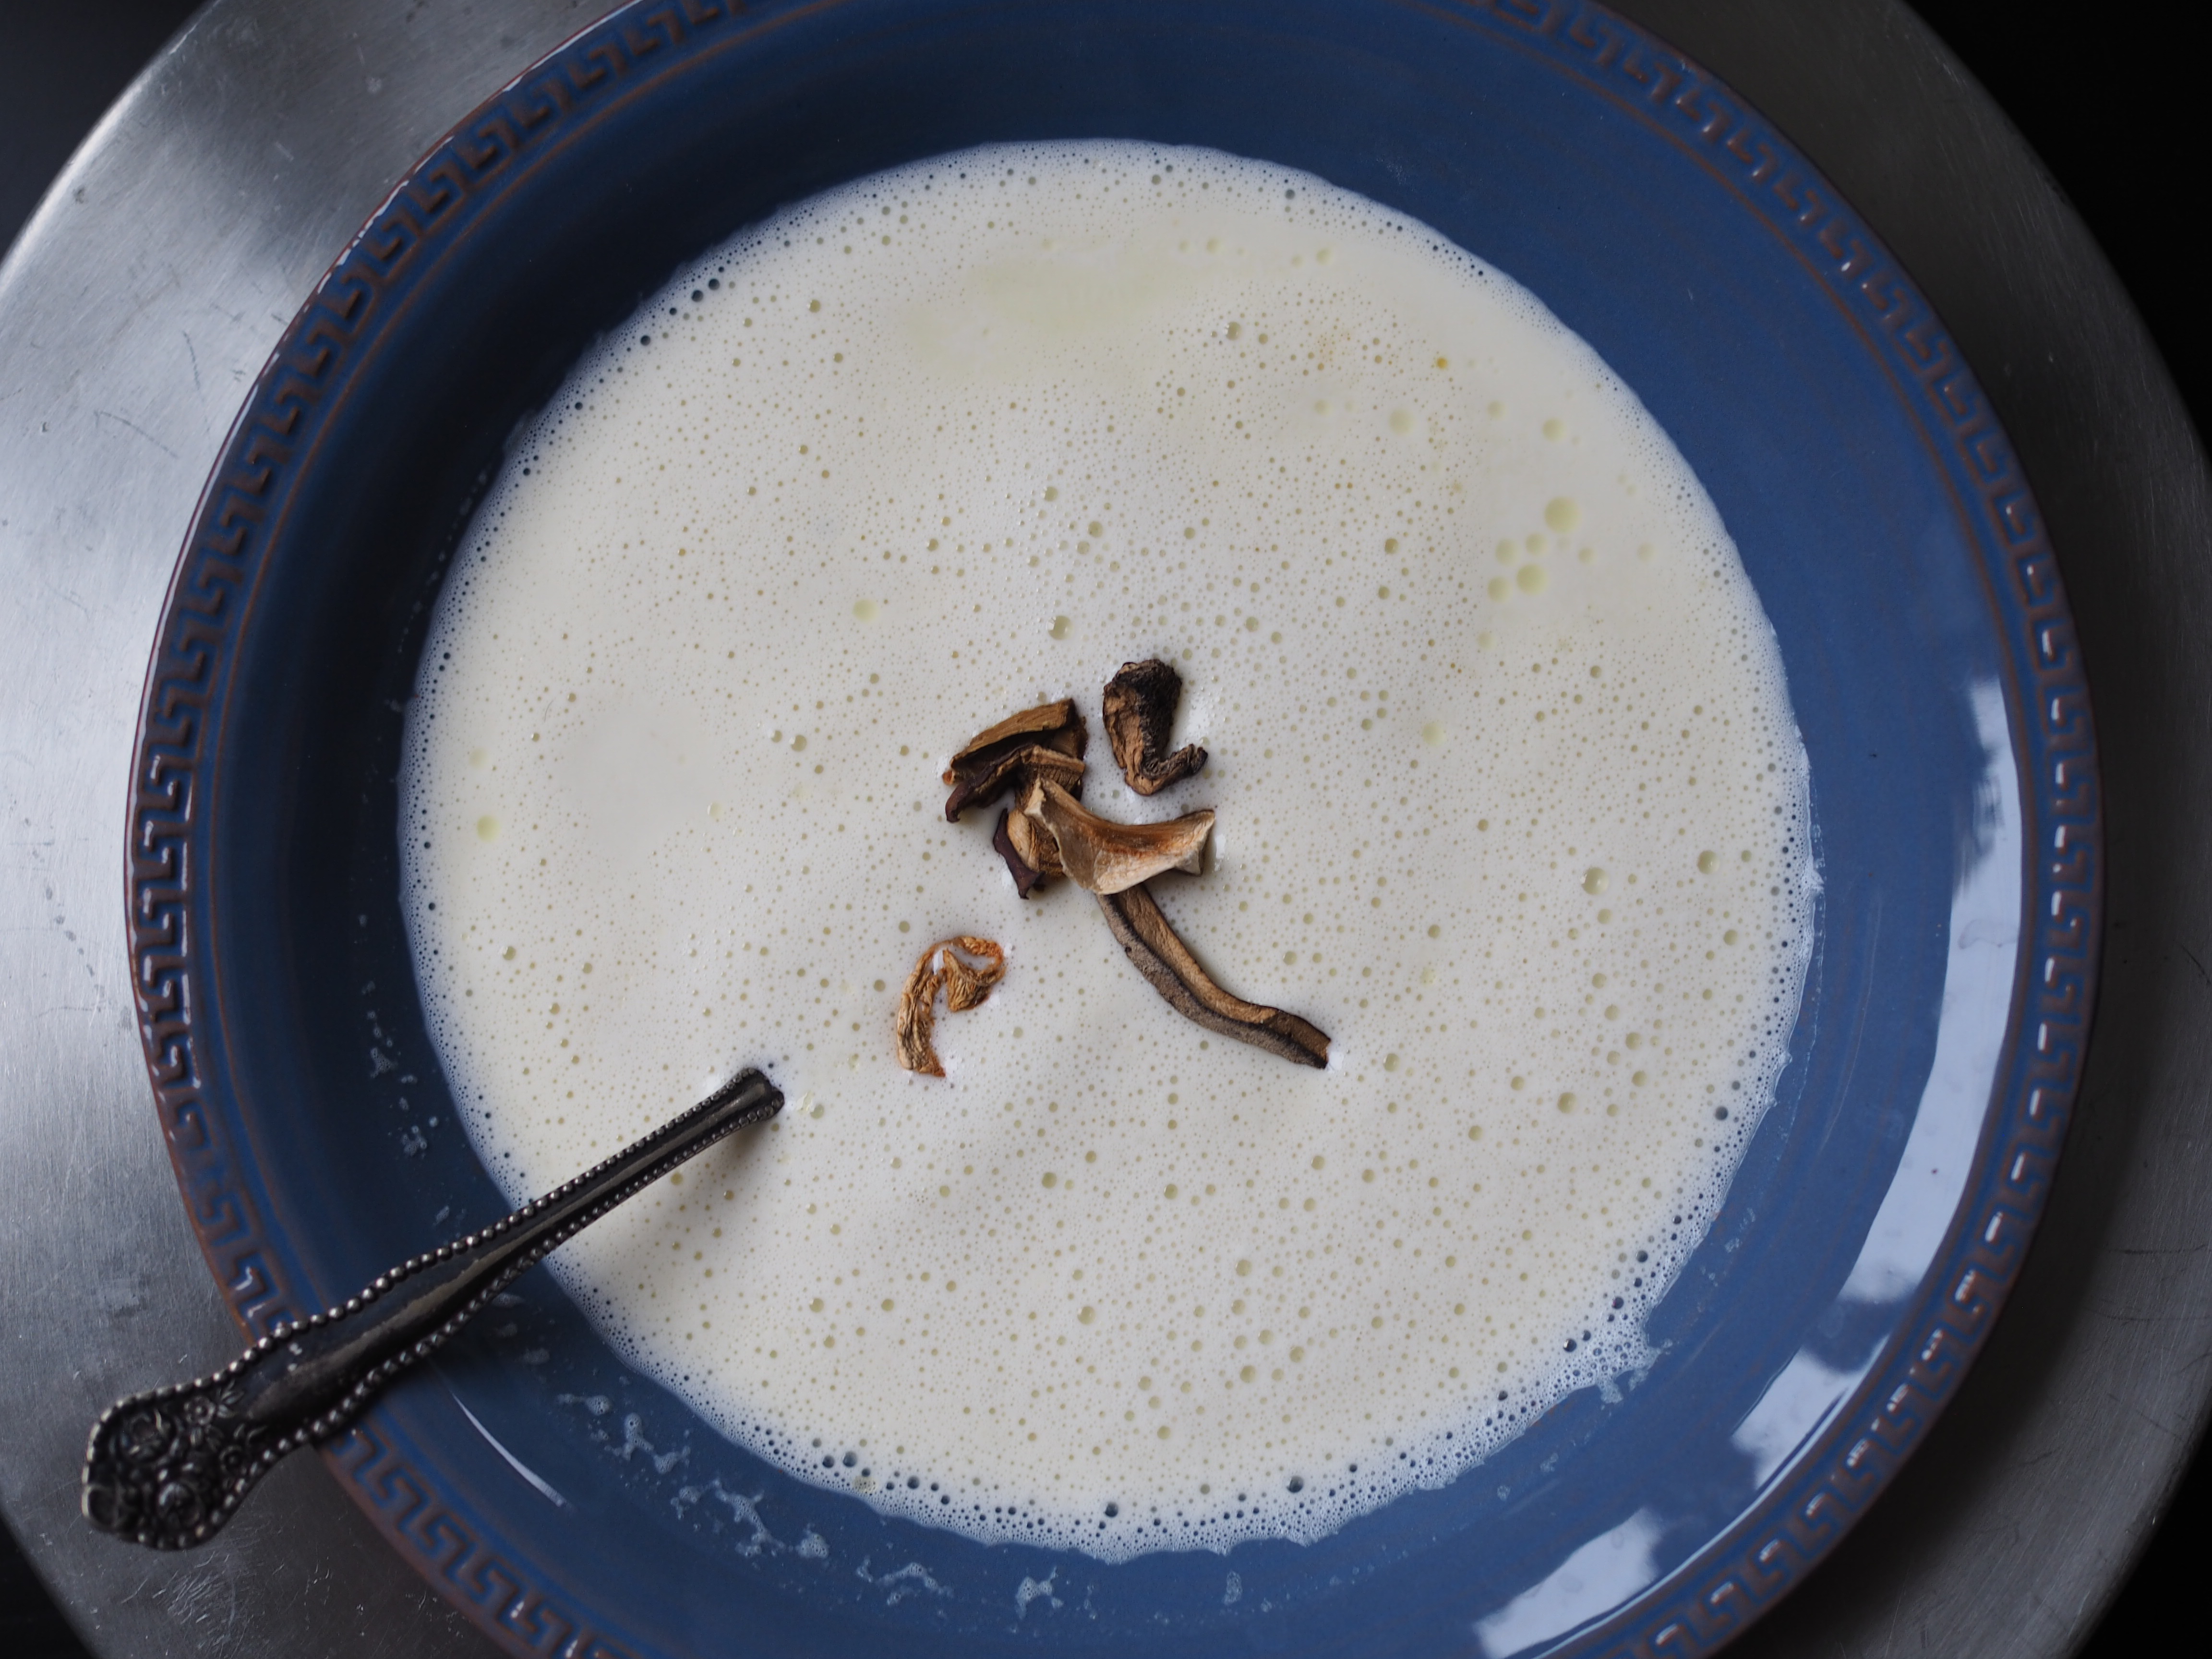 Jordskokksuppe (Creamy Jerusalem Artichoke Soup)